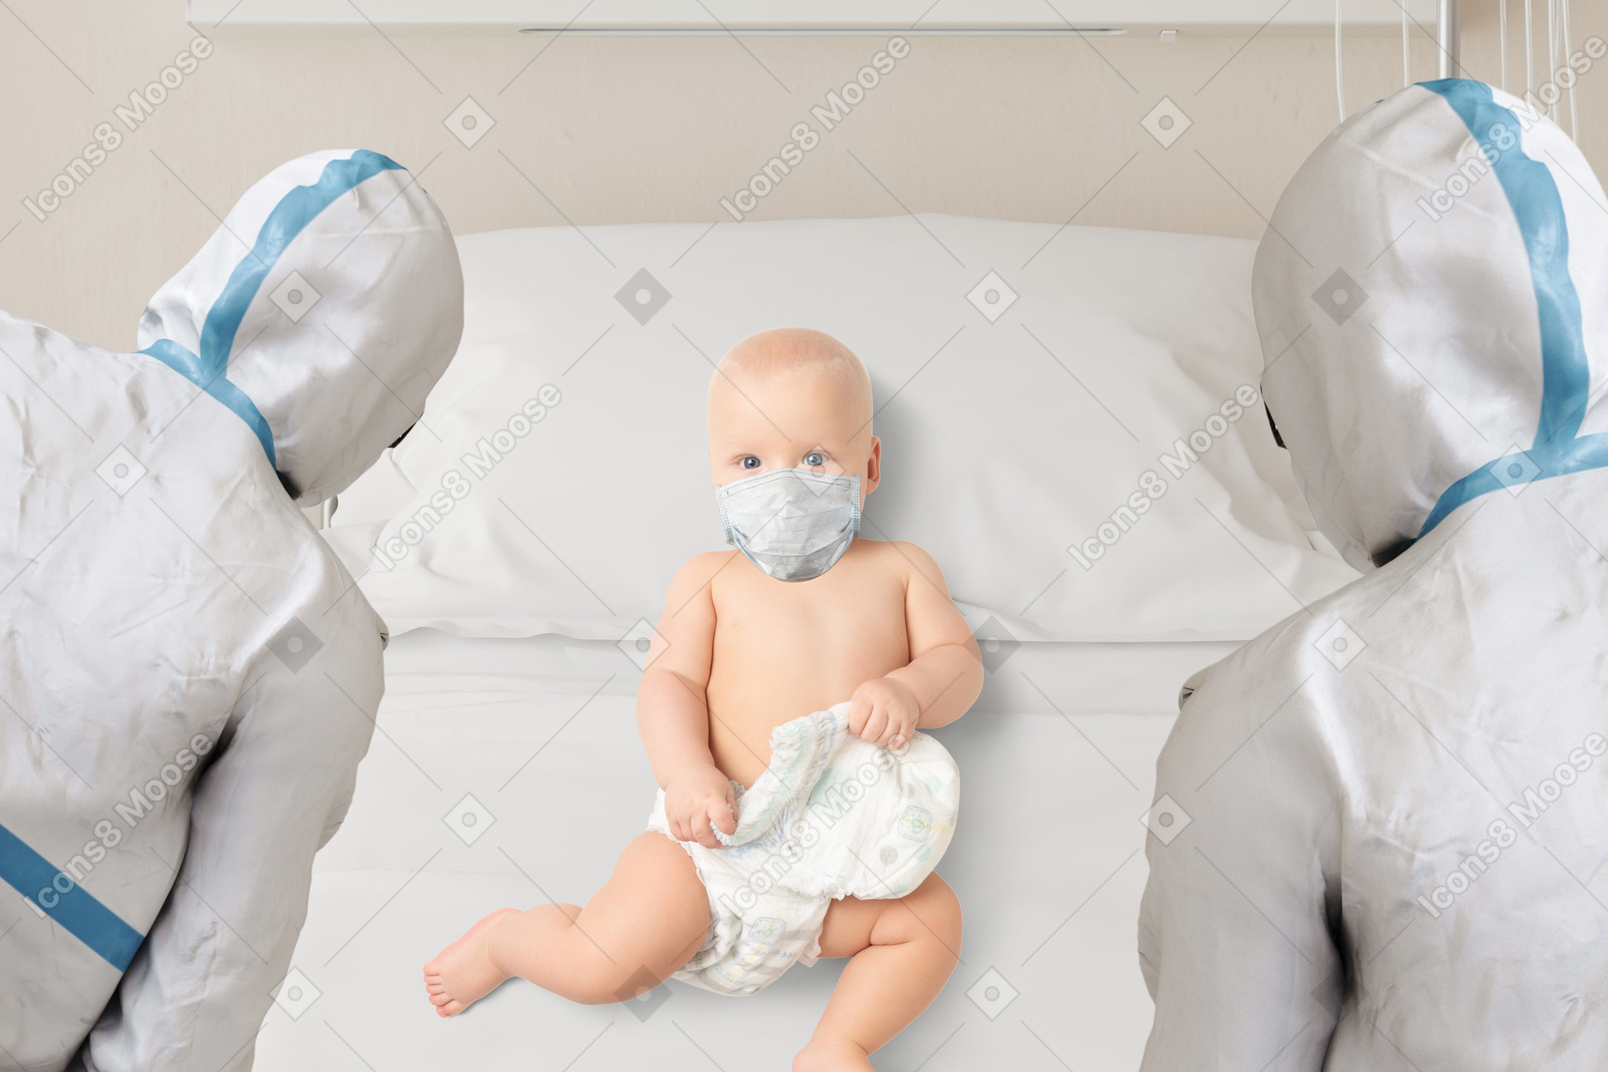 보호 장비를 입은 의사들에게 둘러싸인 병원 침대에 누워 있는 아기